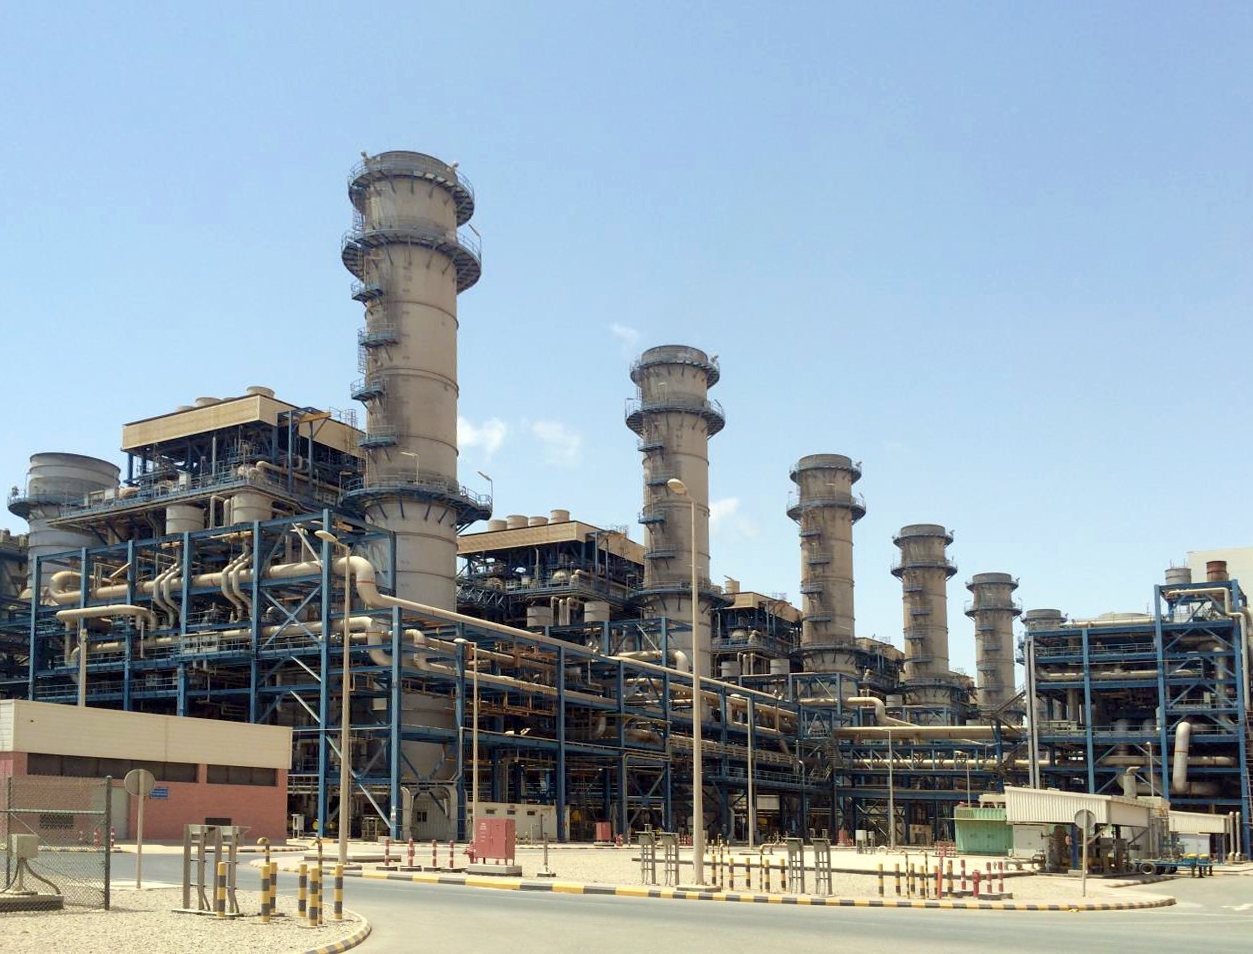 GE Vernova تكمل بنجاح ترقية 4 توربينات غازية في محطة كهرباء الصبية في الكويت، مما يؤدي إلى تحسين الكفاءة وزيادة الإنتاج